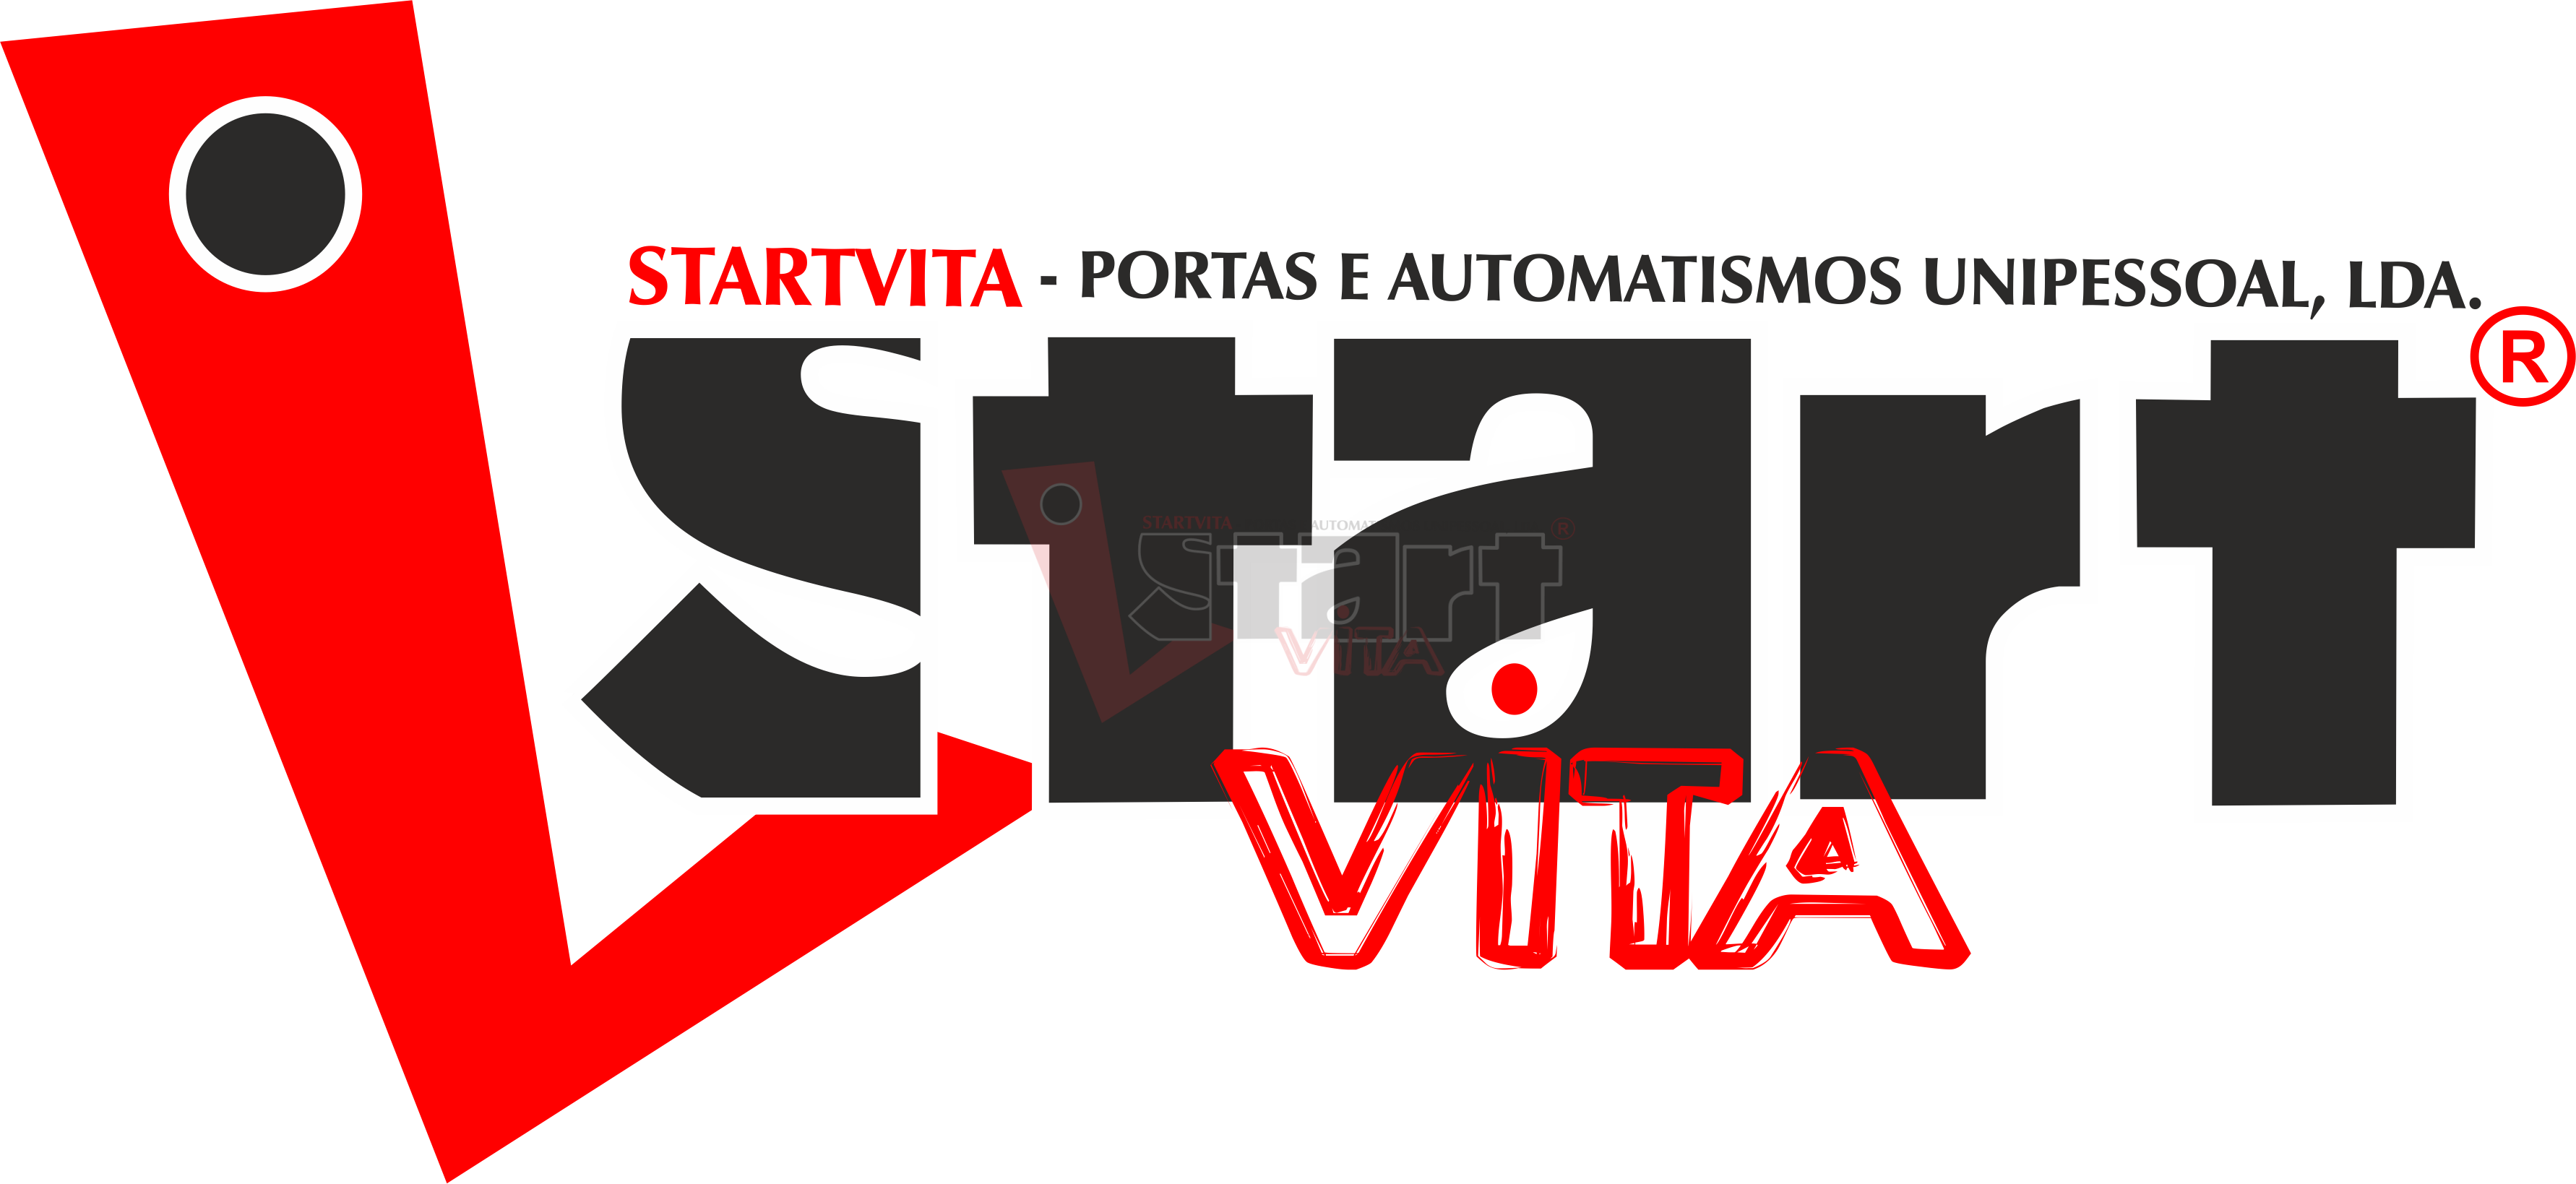 Startvita